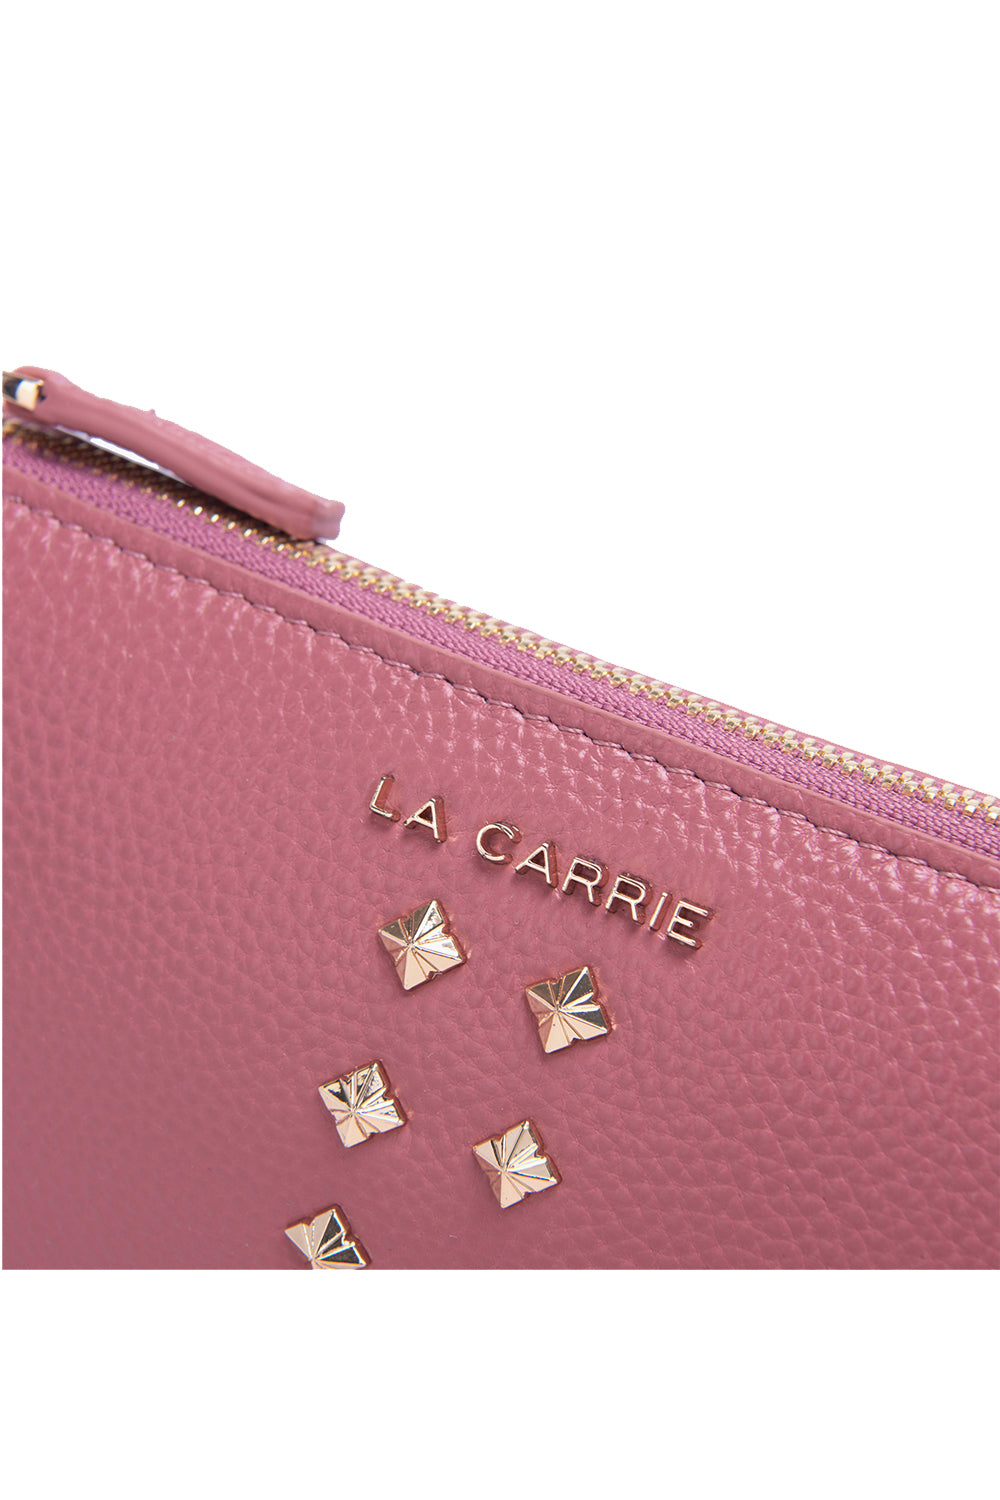 LA CARRIE Wallet-on-chain frivolous con borchie